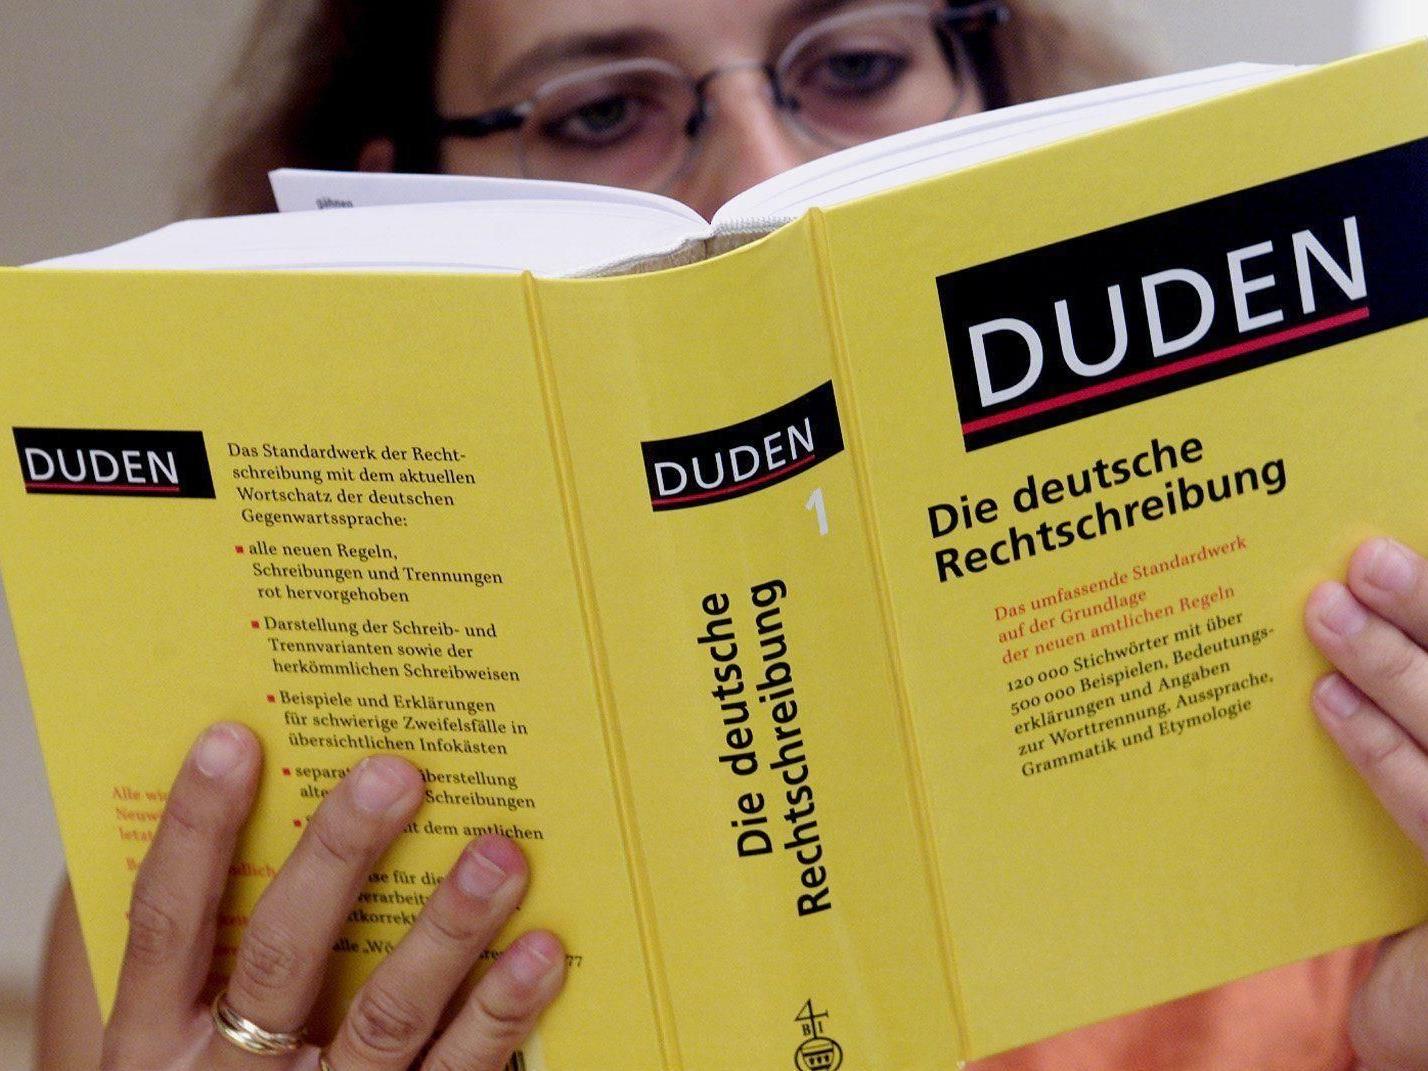 9,4 Millionen Europäer lernen derzeit Deutsch.